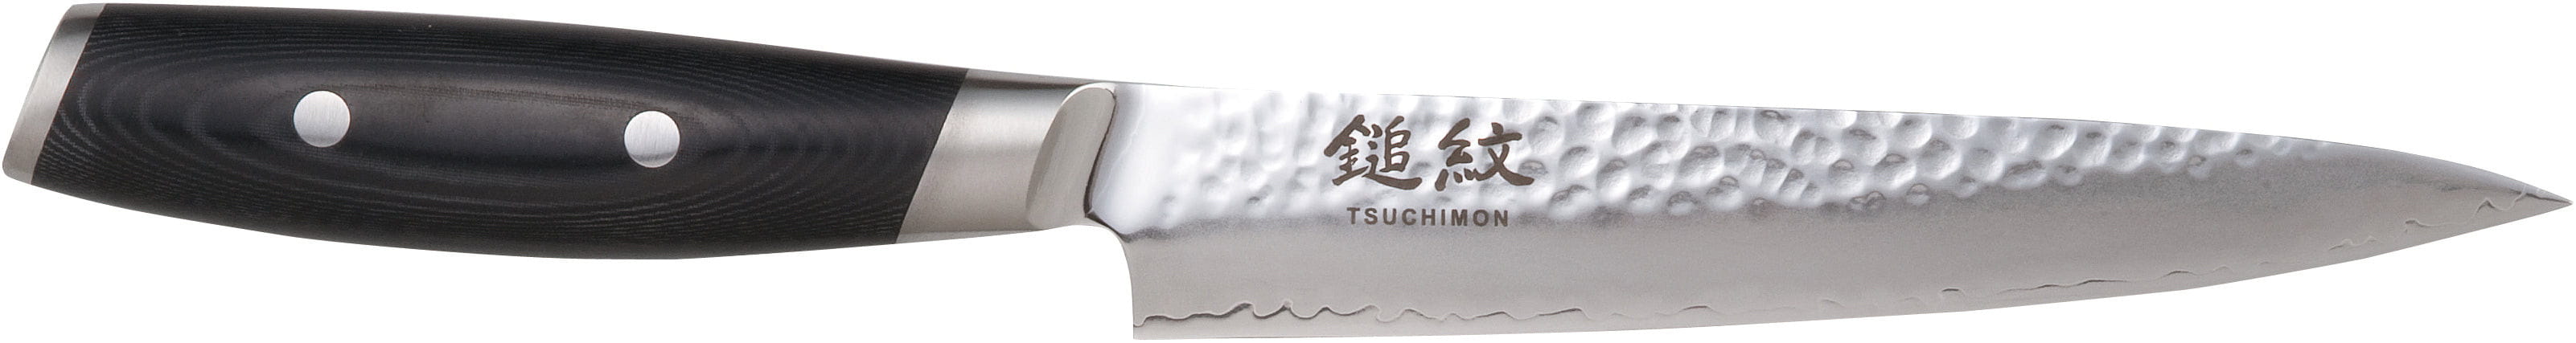 Knife rzeźbiony Yaxell Tsuchimon, 18 cm